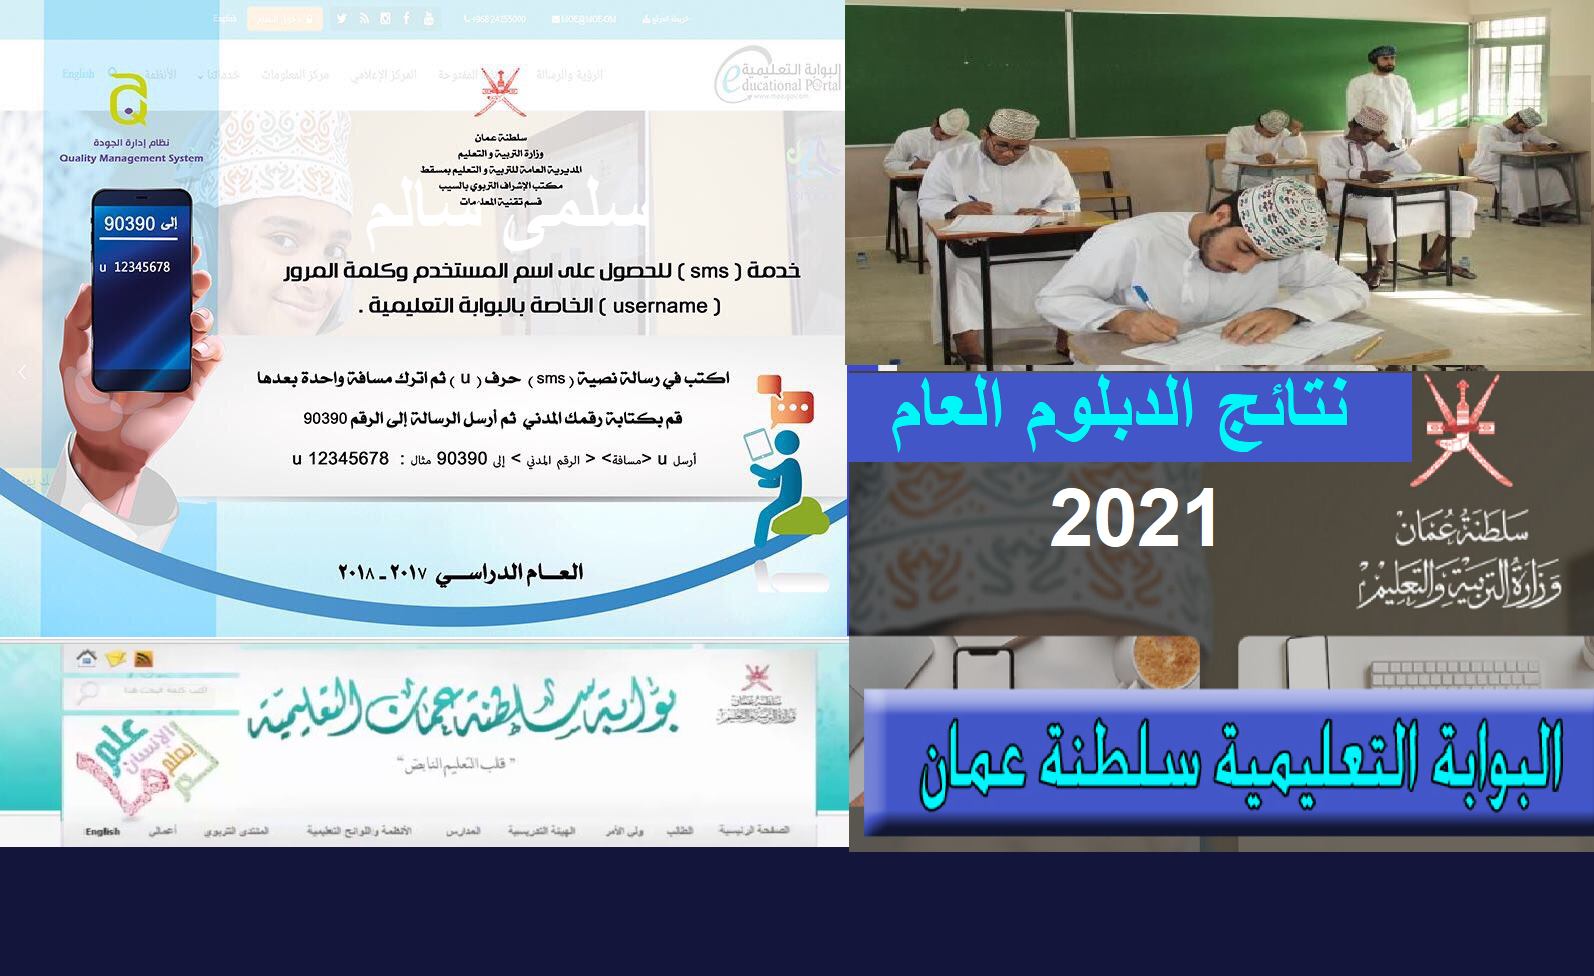 نتائج الدبلوم العام 2021 سلطنة عُمان وما في مستواها طلب إعادة تصحيح على بوابة عُمان التعليمية